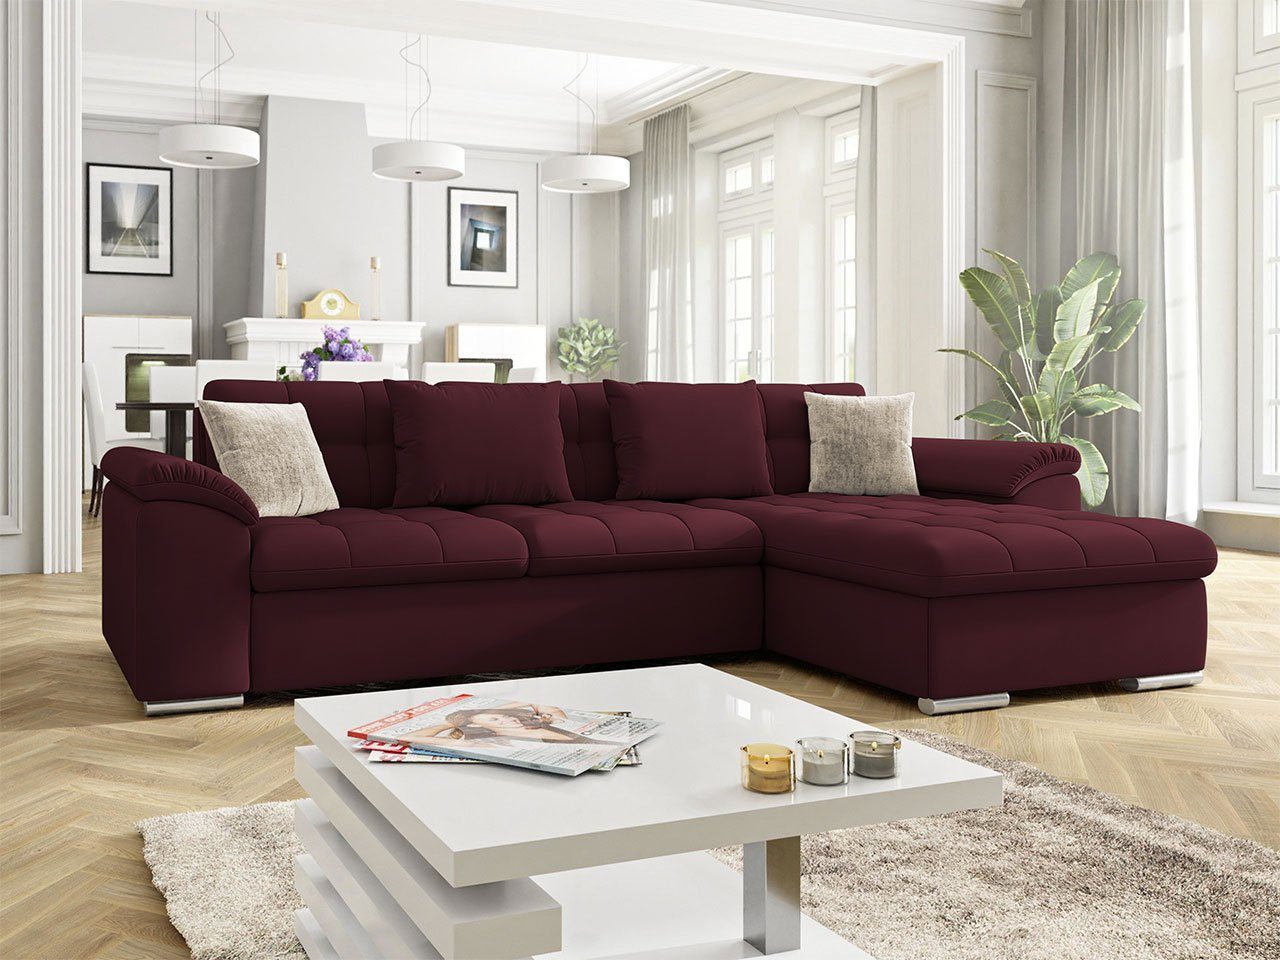 MIRJAN24 Ecksofa Diana Premium, mit Bettkasten und Schlaffunktion, Polsterecke Sofa, Farbauswahl Couchgarnitur